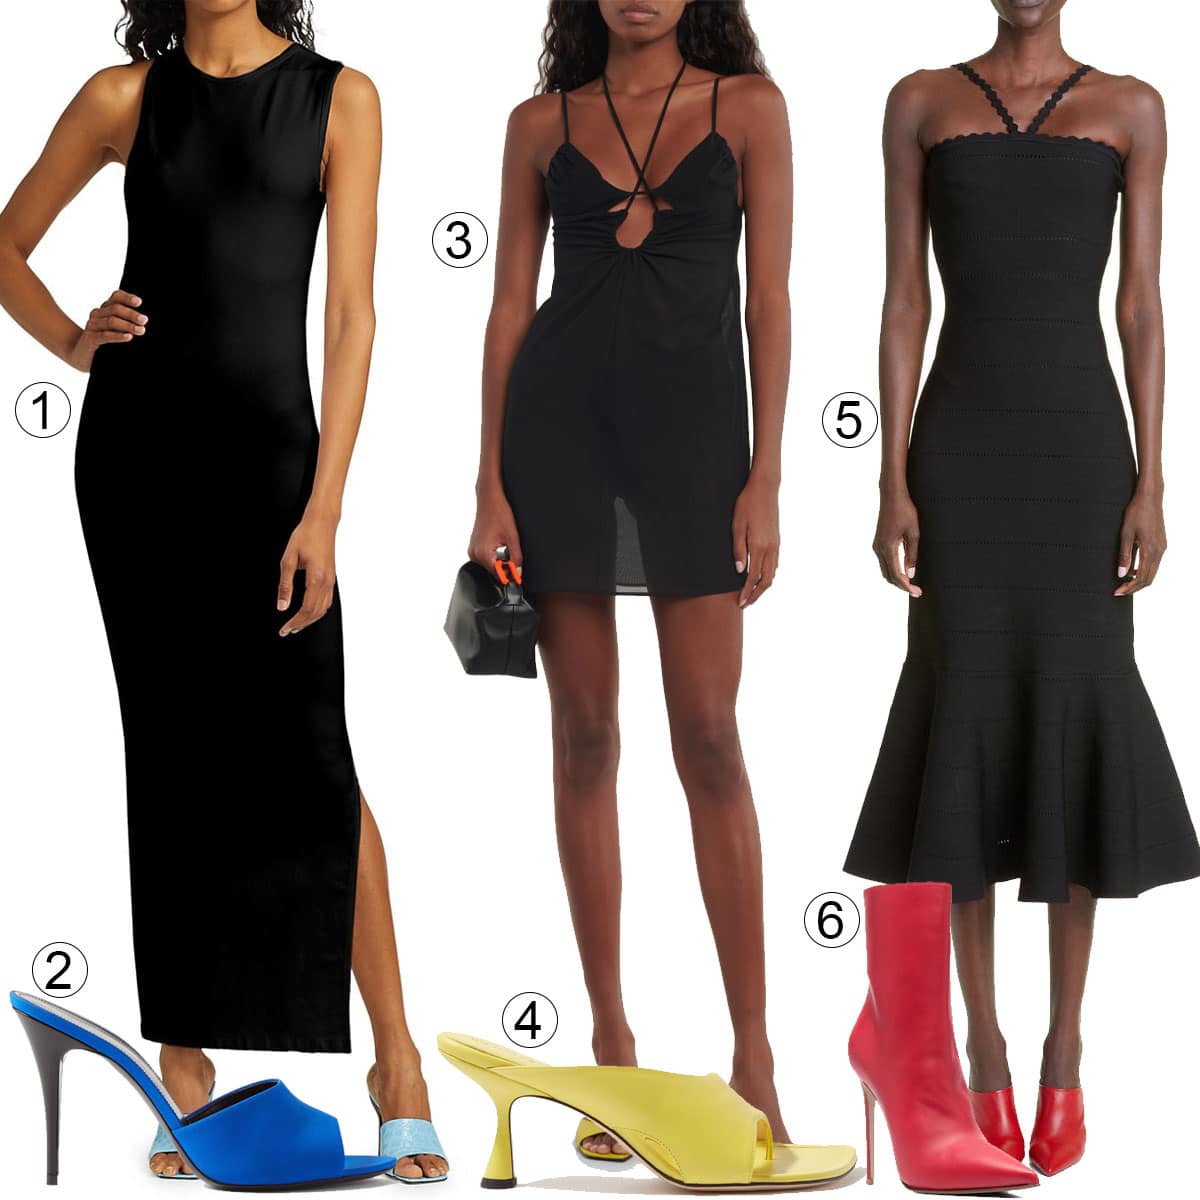 Black Dresses | Short Black Dresses to Long Black Gowns | Windsor